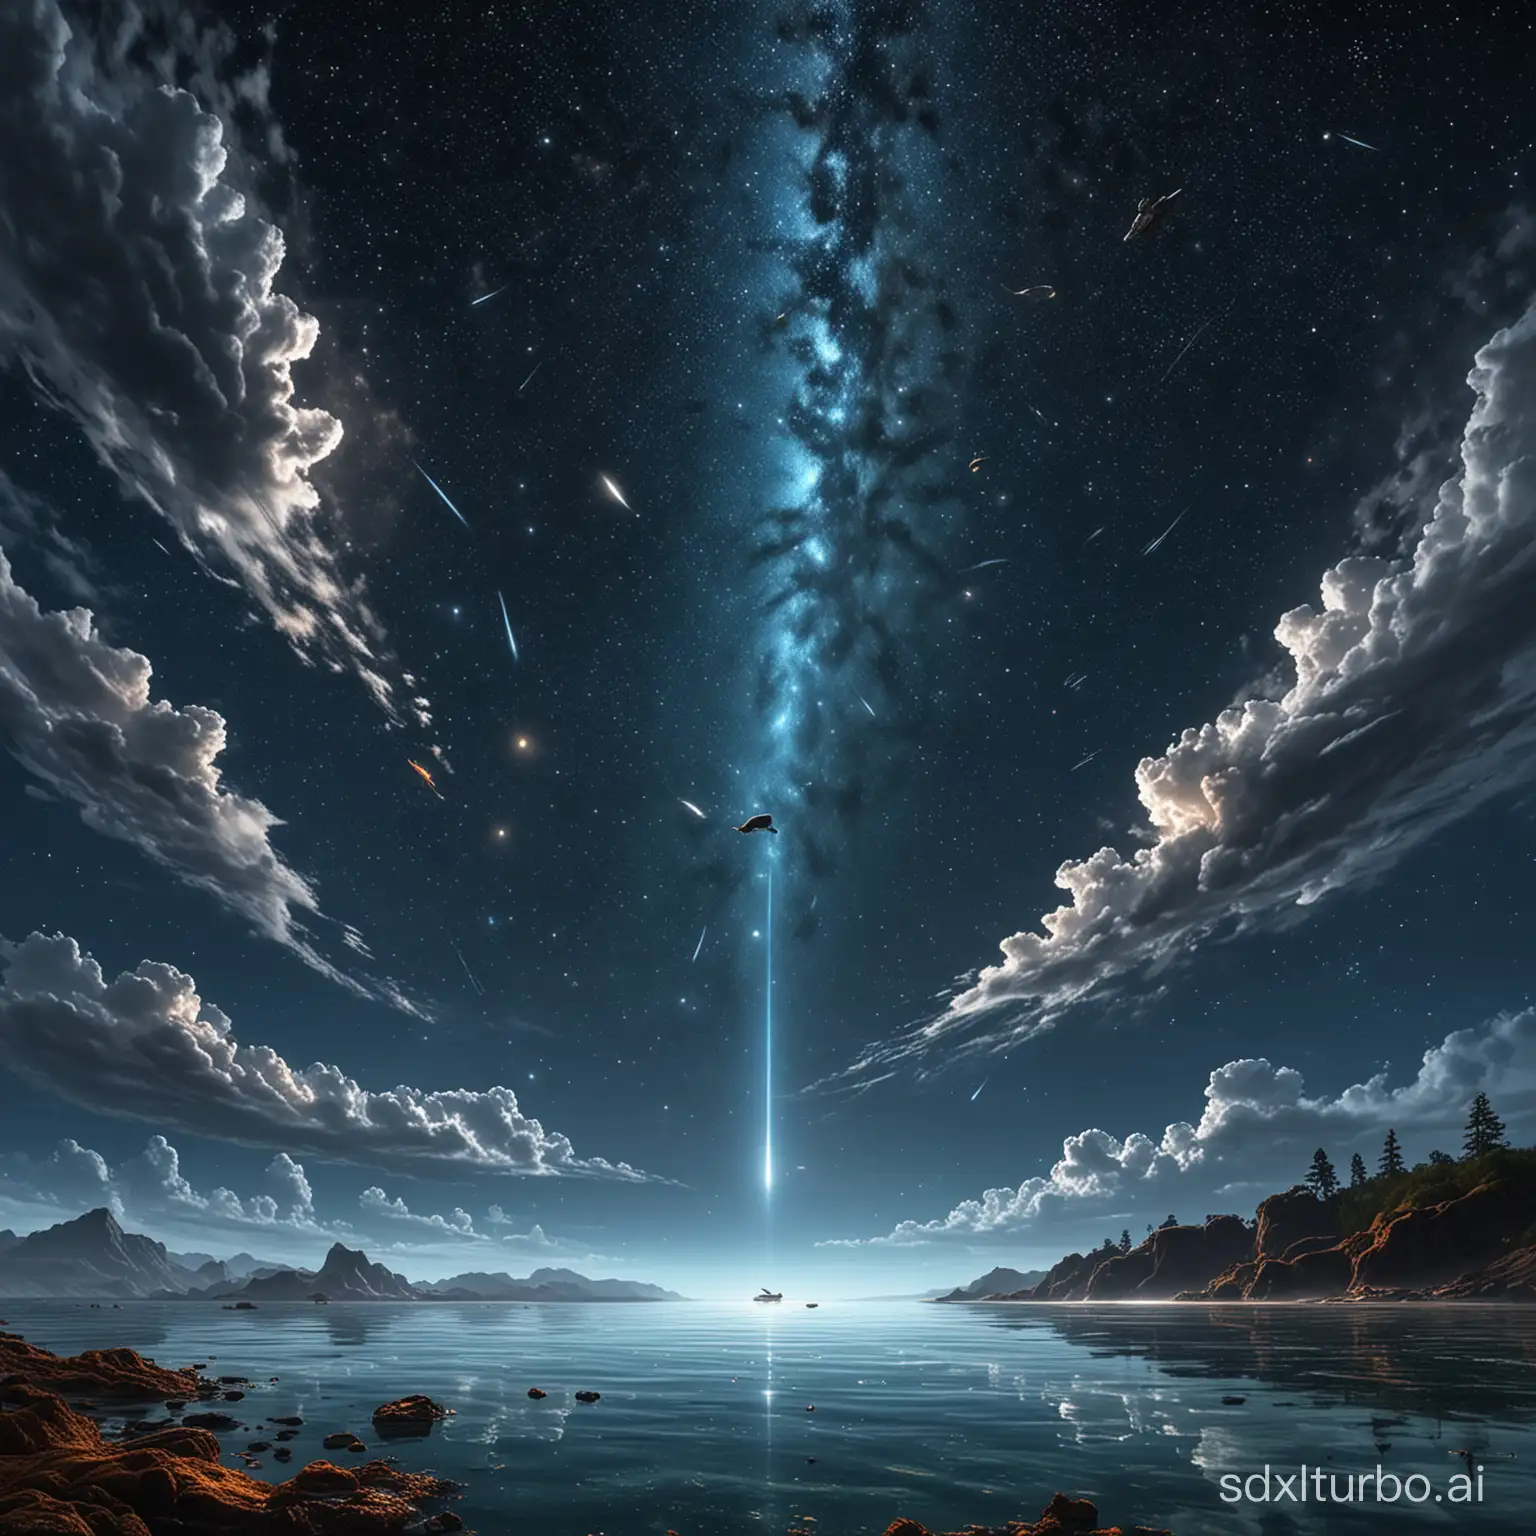 Starry-Skies-and-Underwater-Wonders-with-Meteors